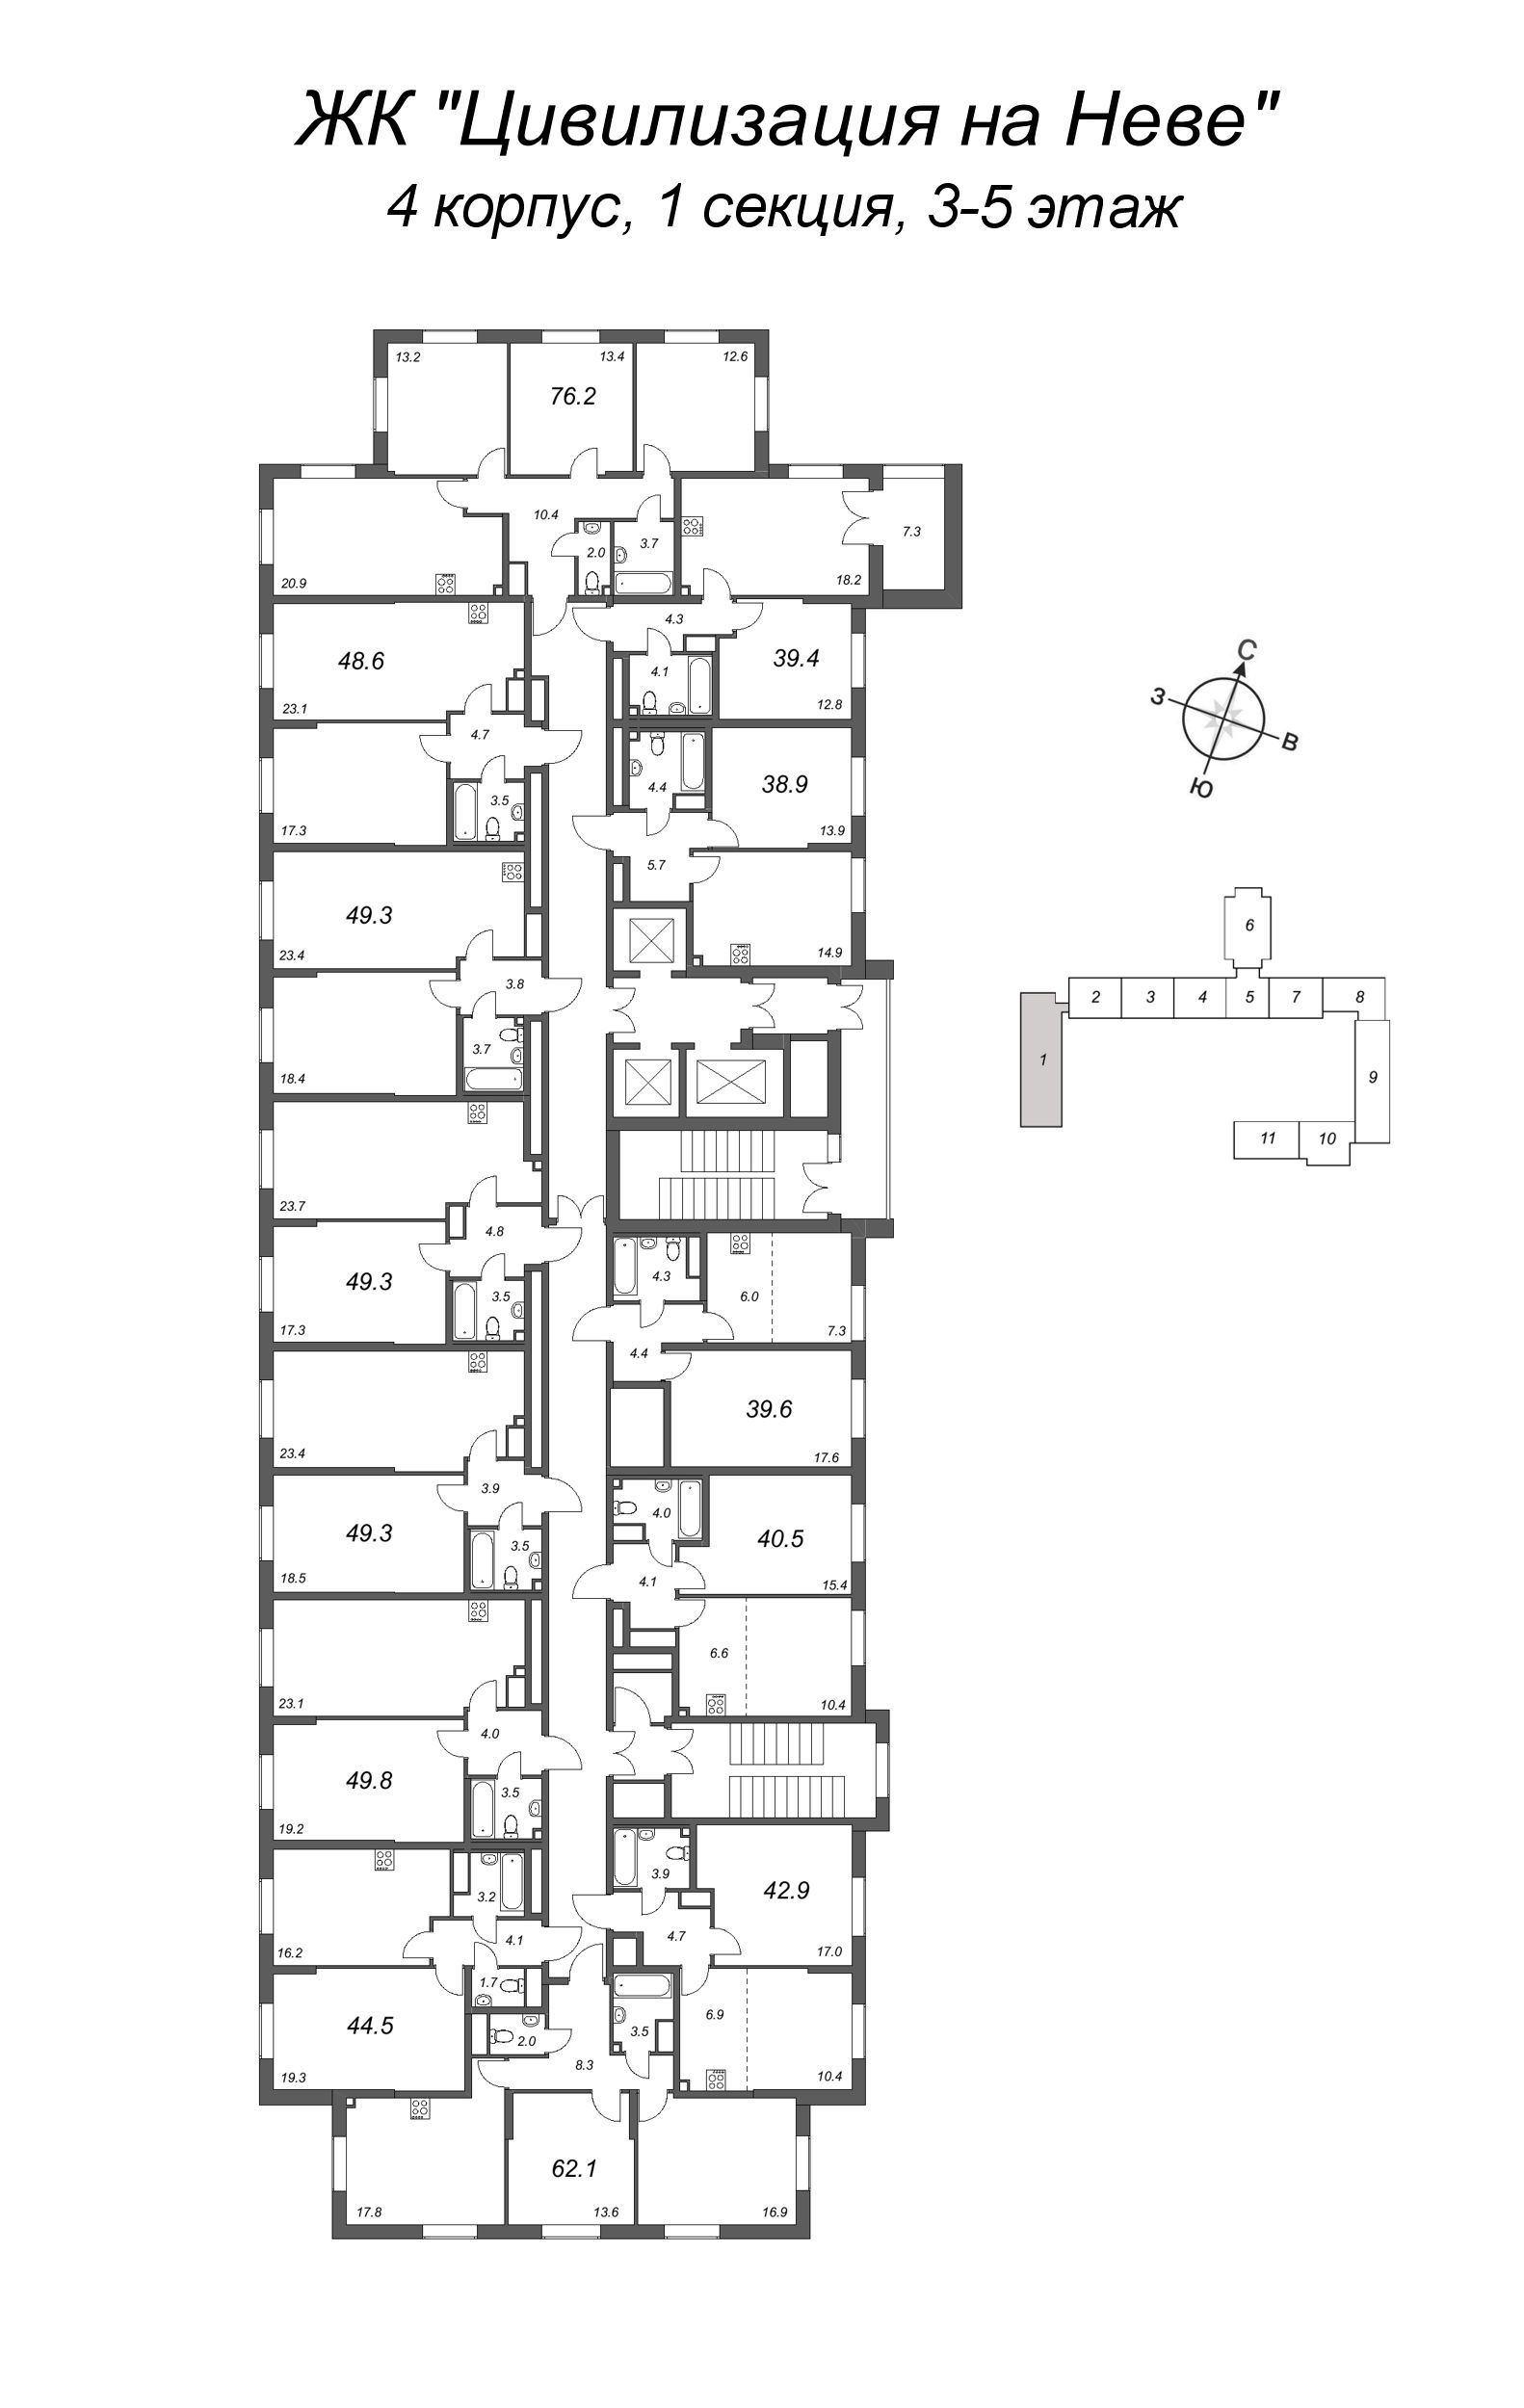 2-комнатная (Евро) квартира, 44.5 м² в ЖК "Цивилизация на Неве" - планировка этажа